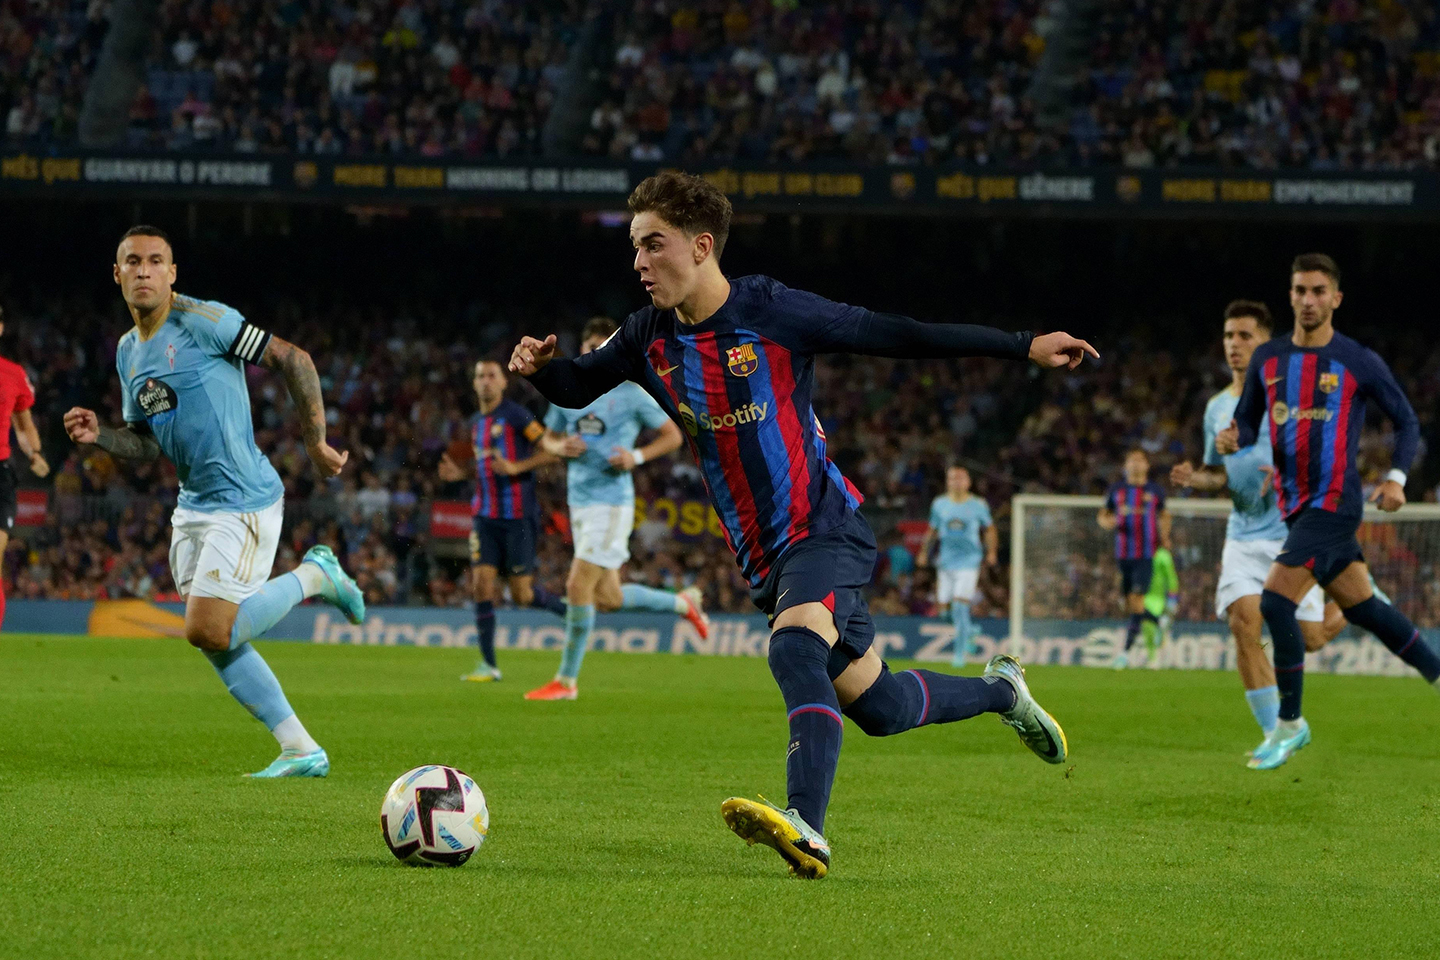 Gavi dispara a portería durante el encuentro que enfrentó al FC Barcelona con el Real Club Celta de Vigo - Foto: LaLiga.